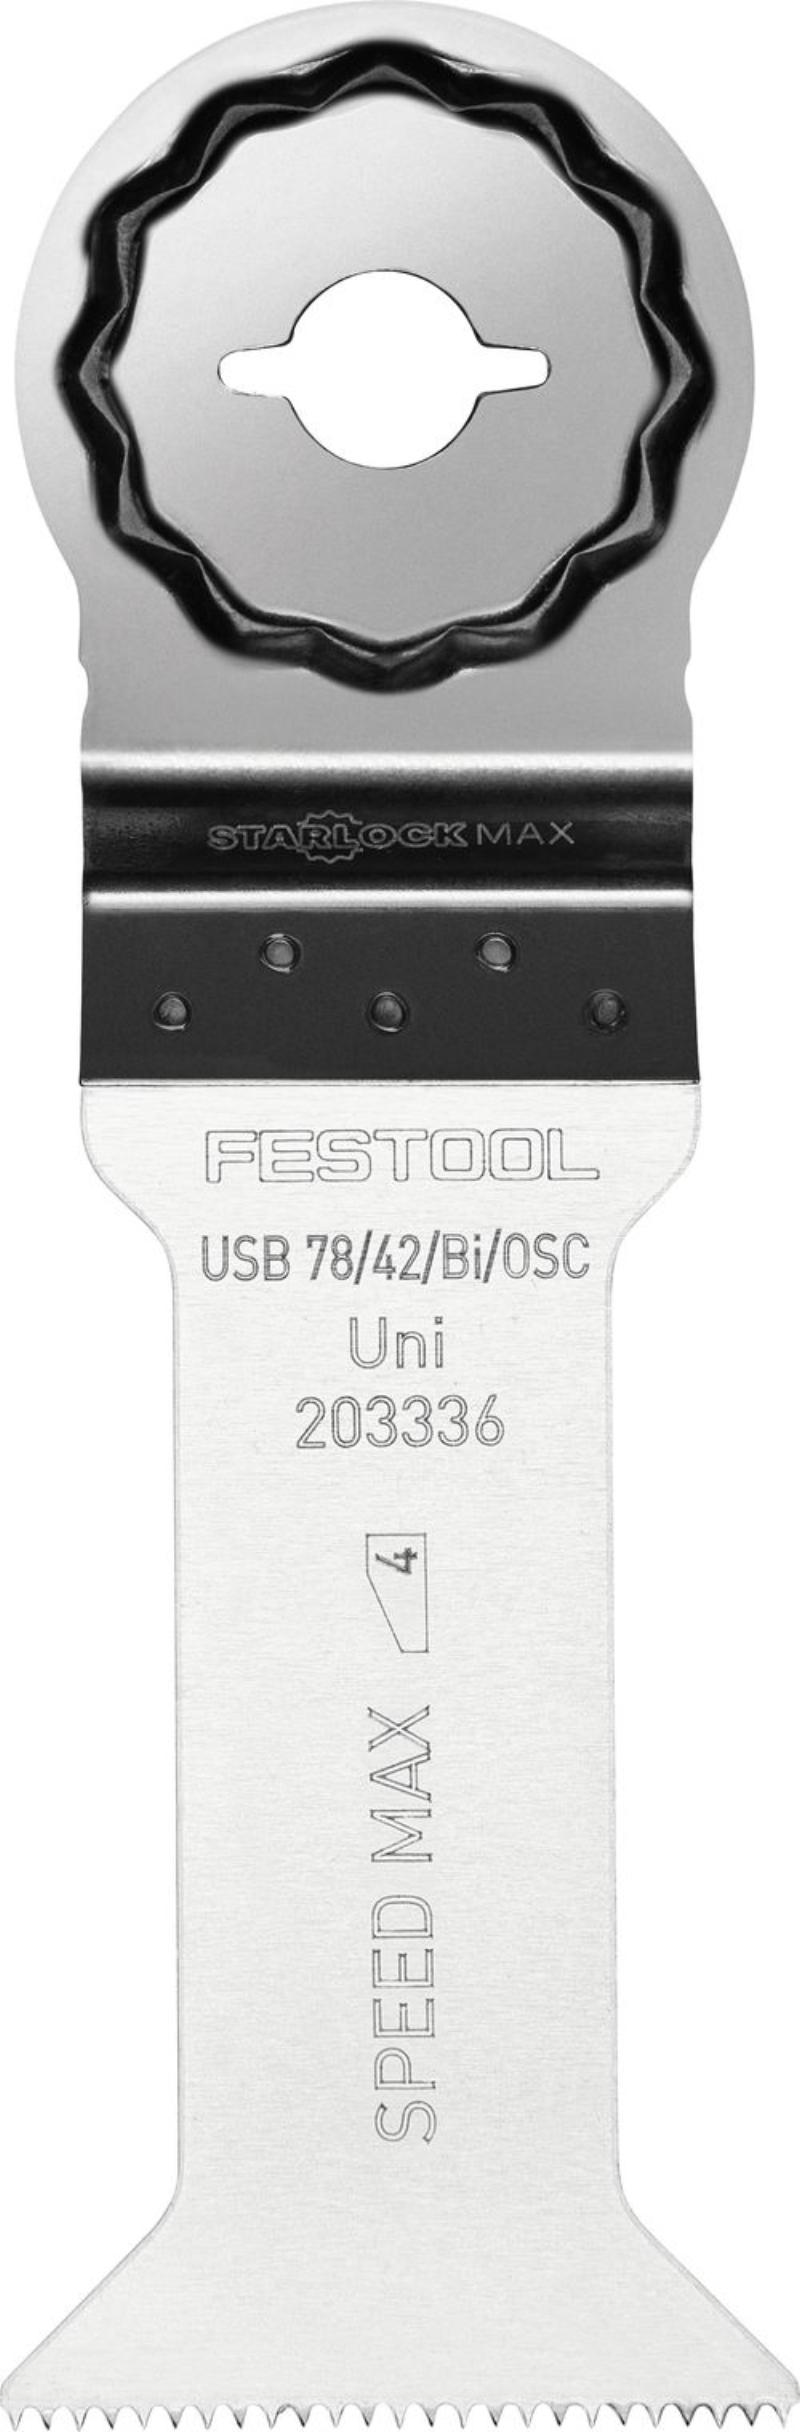 Festool Universalsågblad USB 78/42/Bi/OSC, 1 st